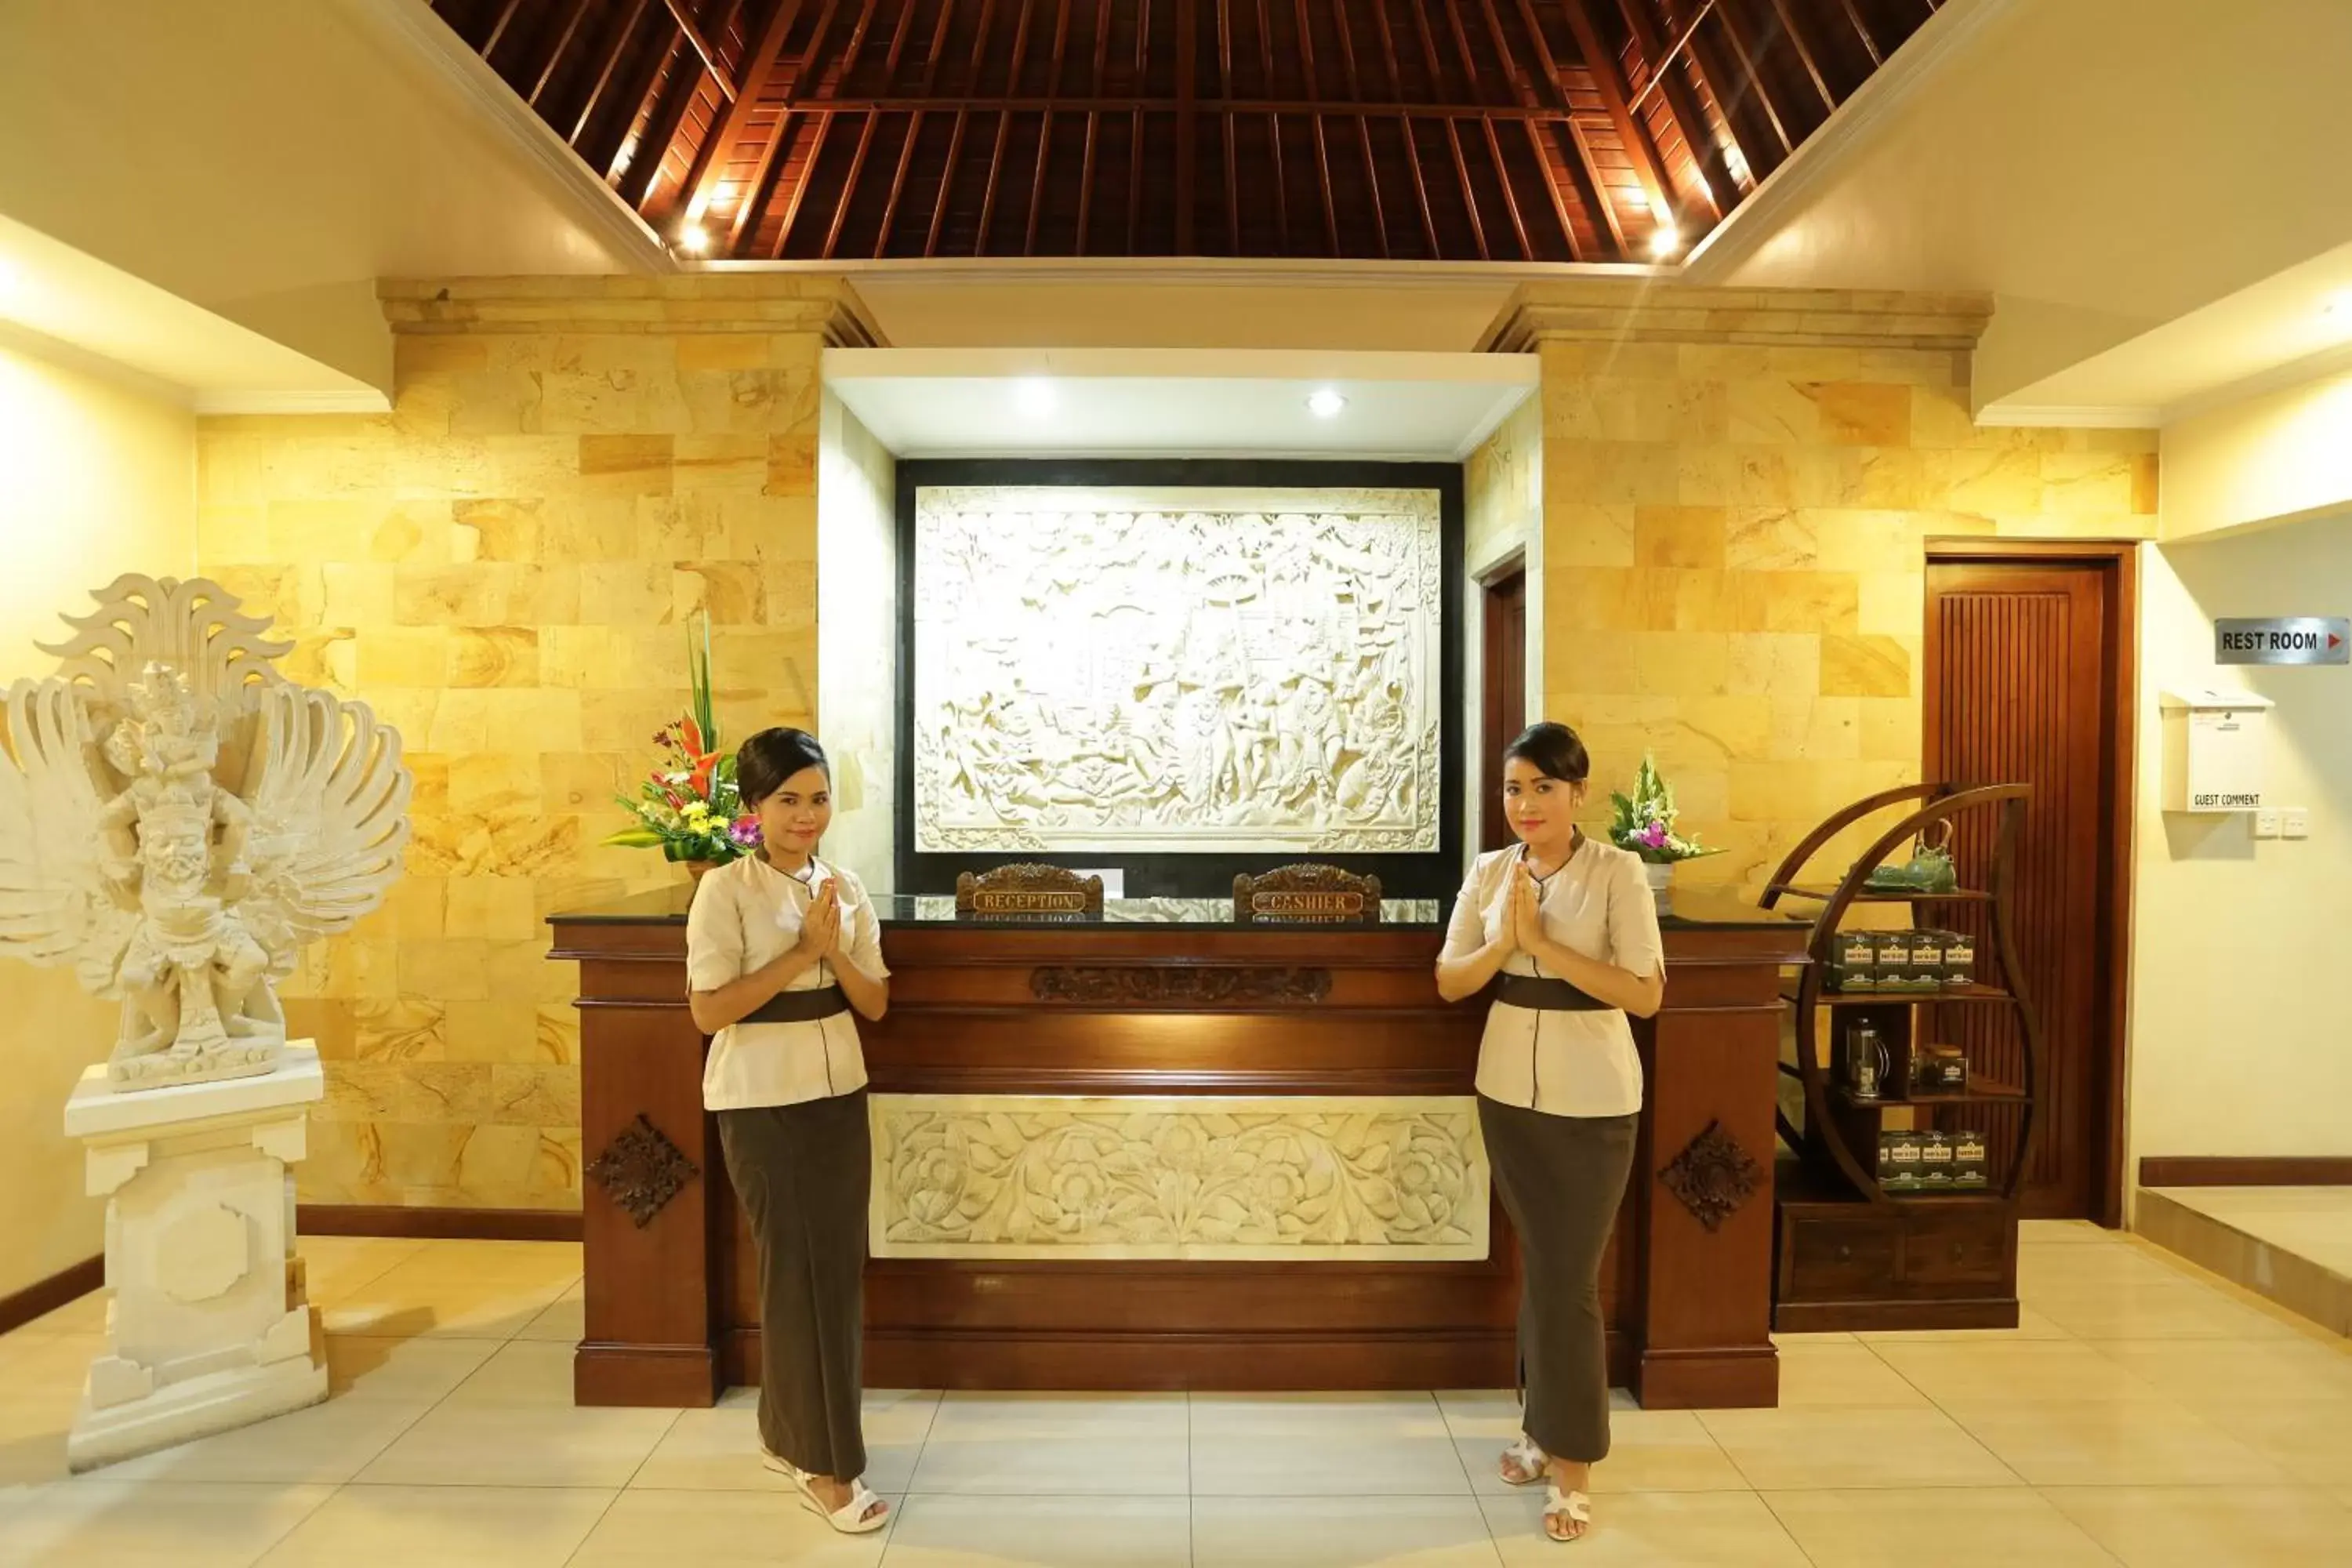 Lobby or reception in Hotel Segara Agung